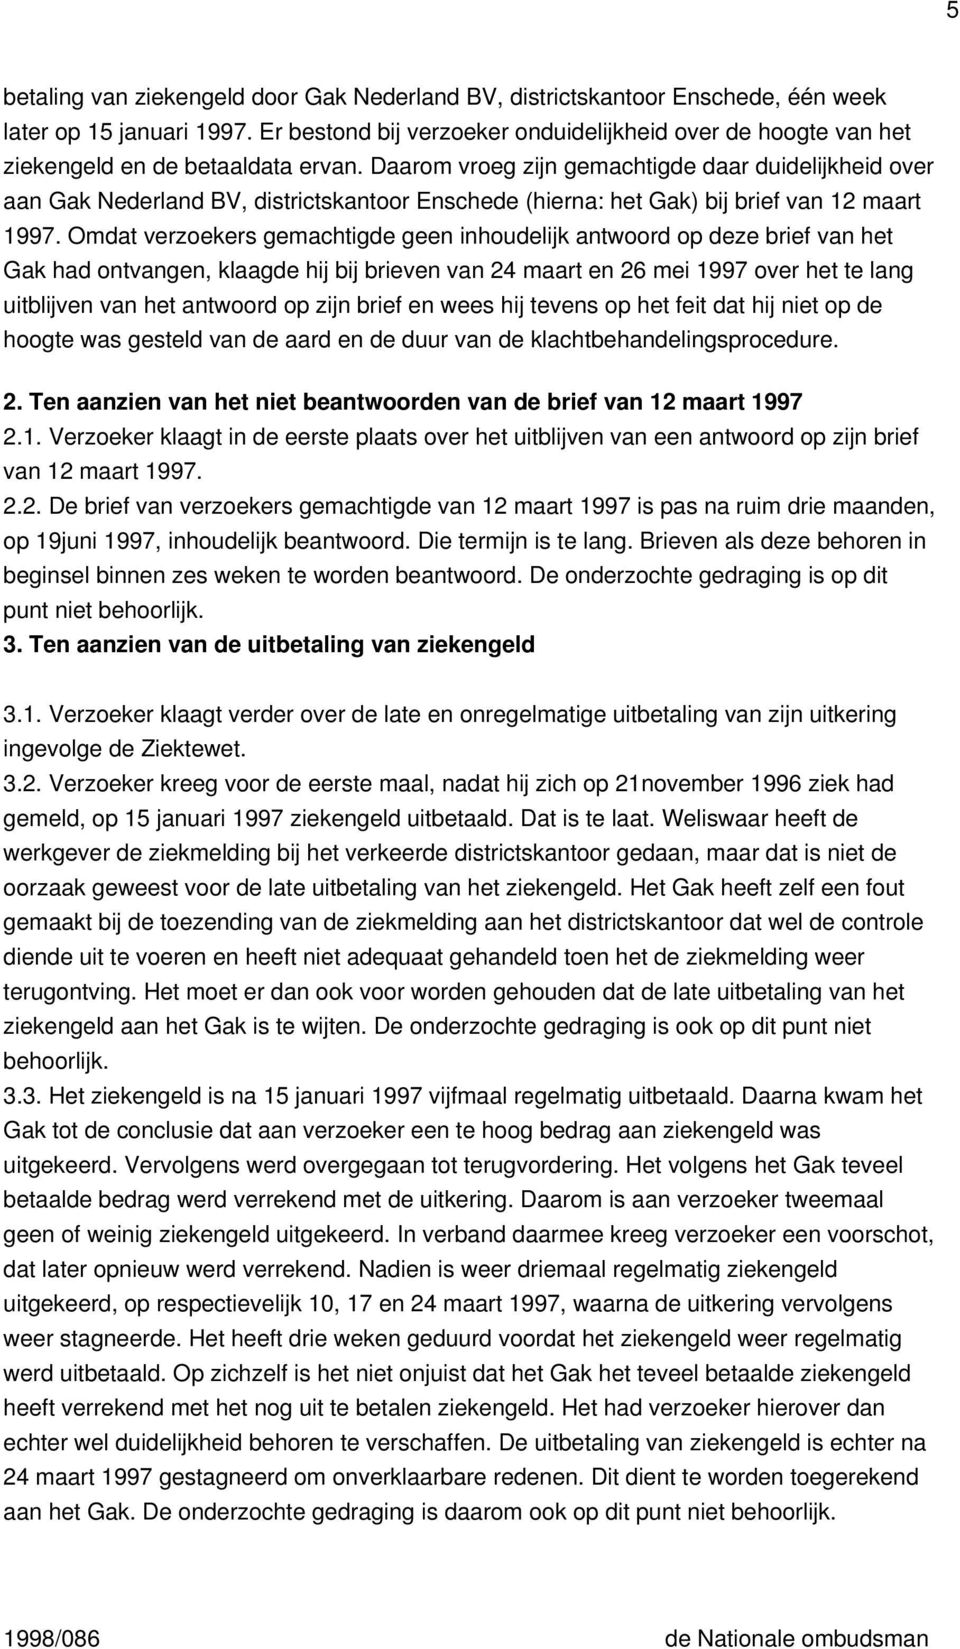 Daarom vroeg zijn gemachtigde daar duidelijkheid over aan Gak Nederland BV, districtskantoor Enschede (hierna: het Gak) bij brief van 12 maart 1997.